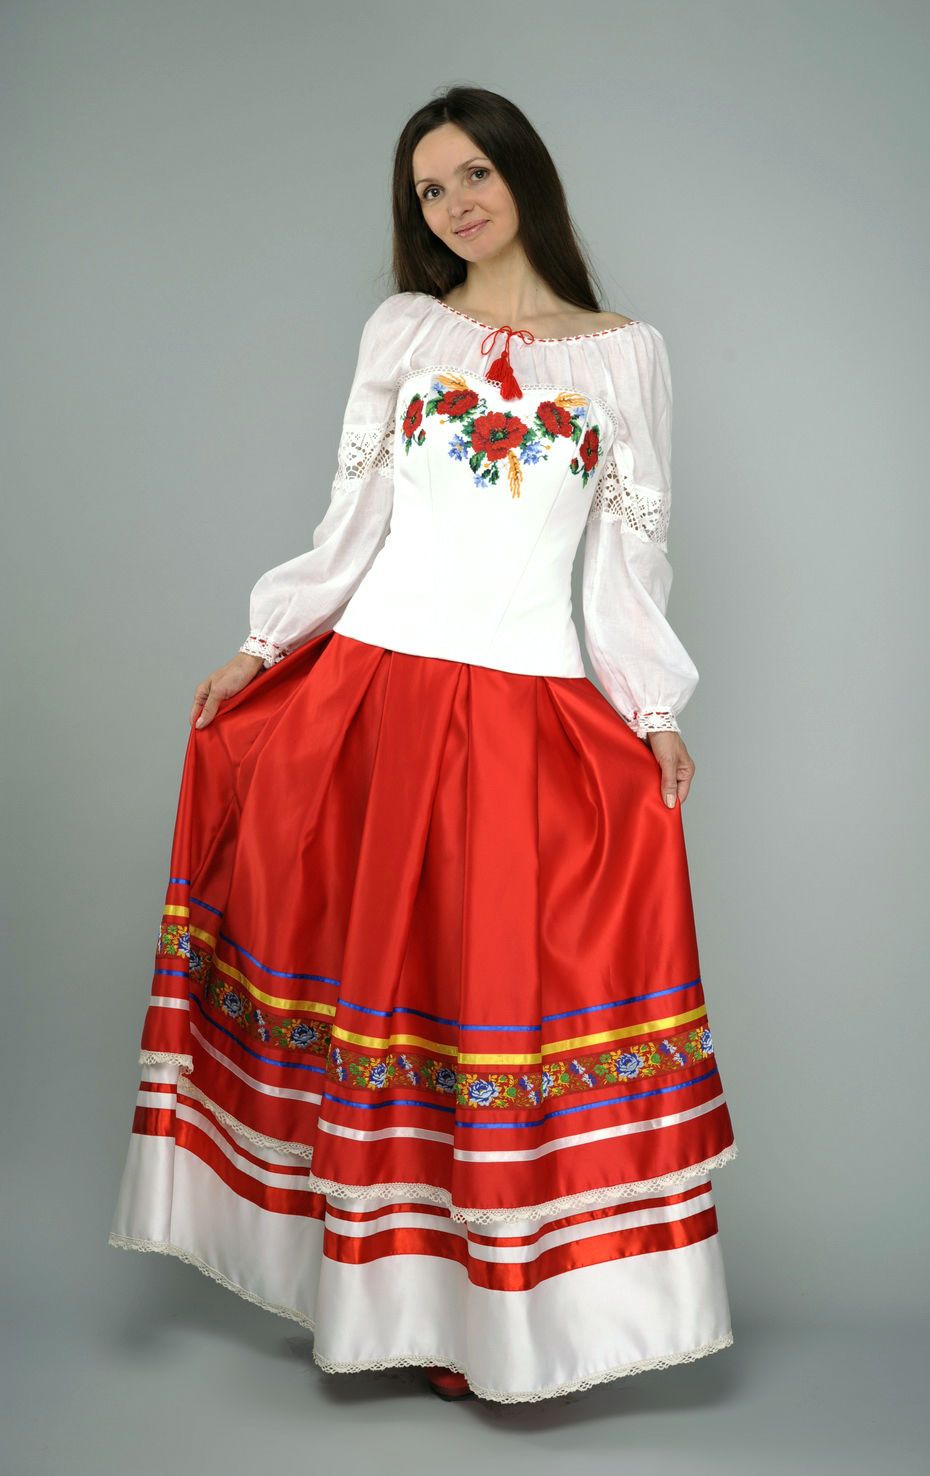 Комплект одежды в этническом стиле: юбка, блуза, корсет фото 1